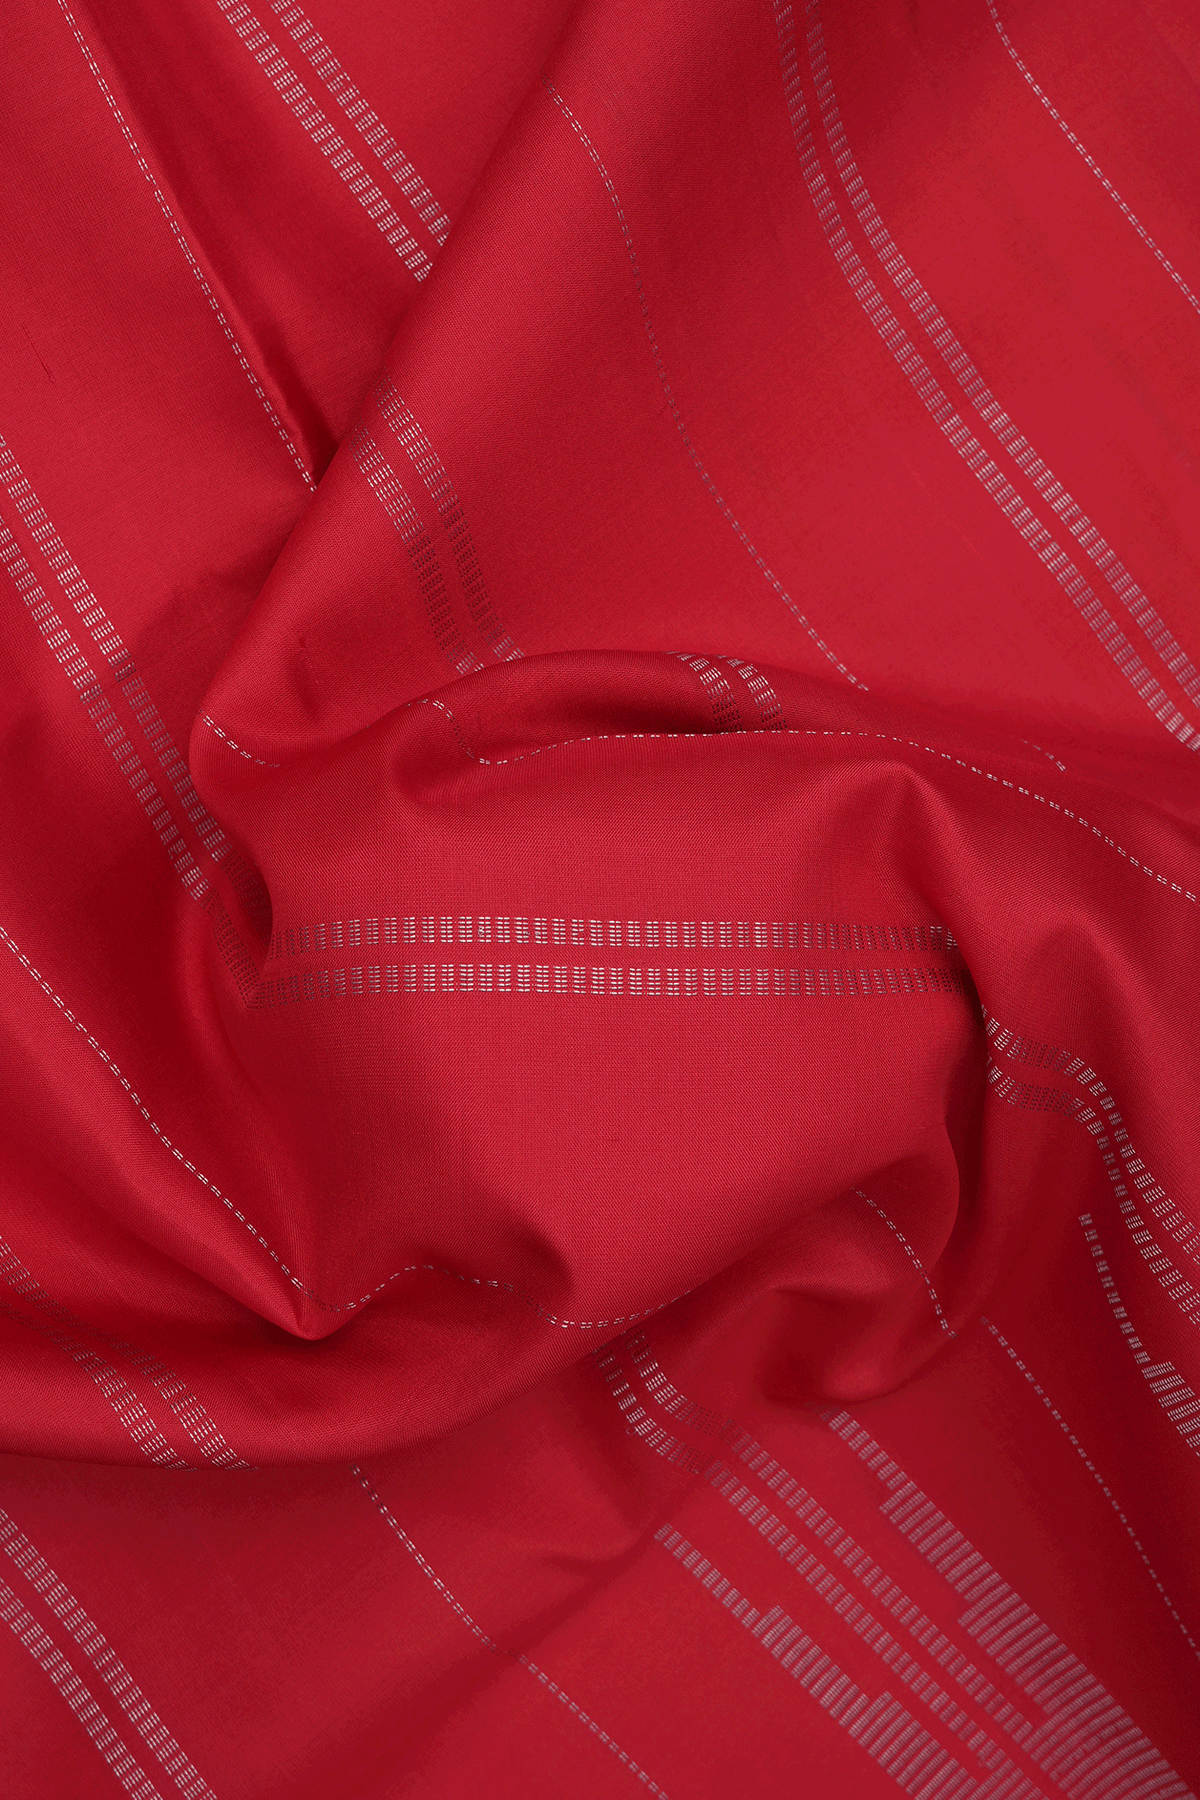 Zari Striped Design Chilli Red Soft Silk Saree